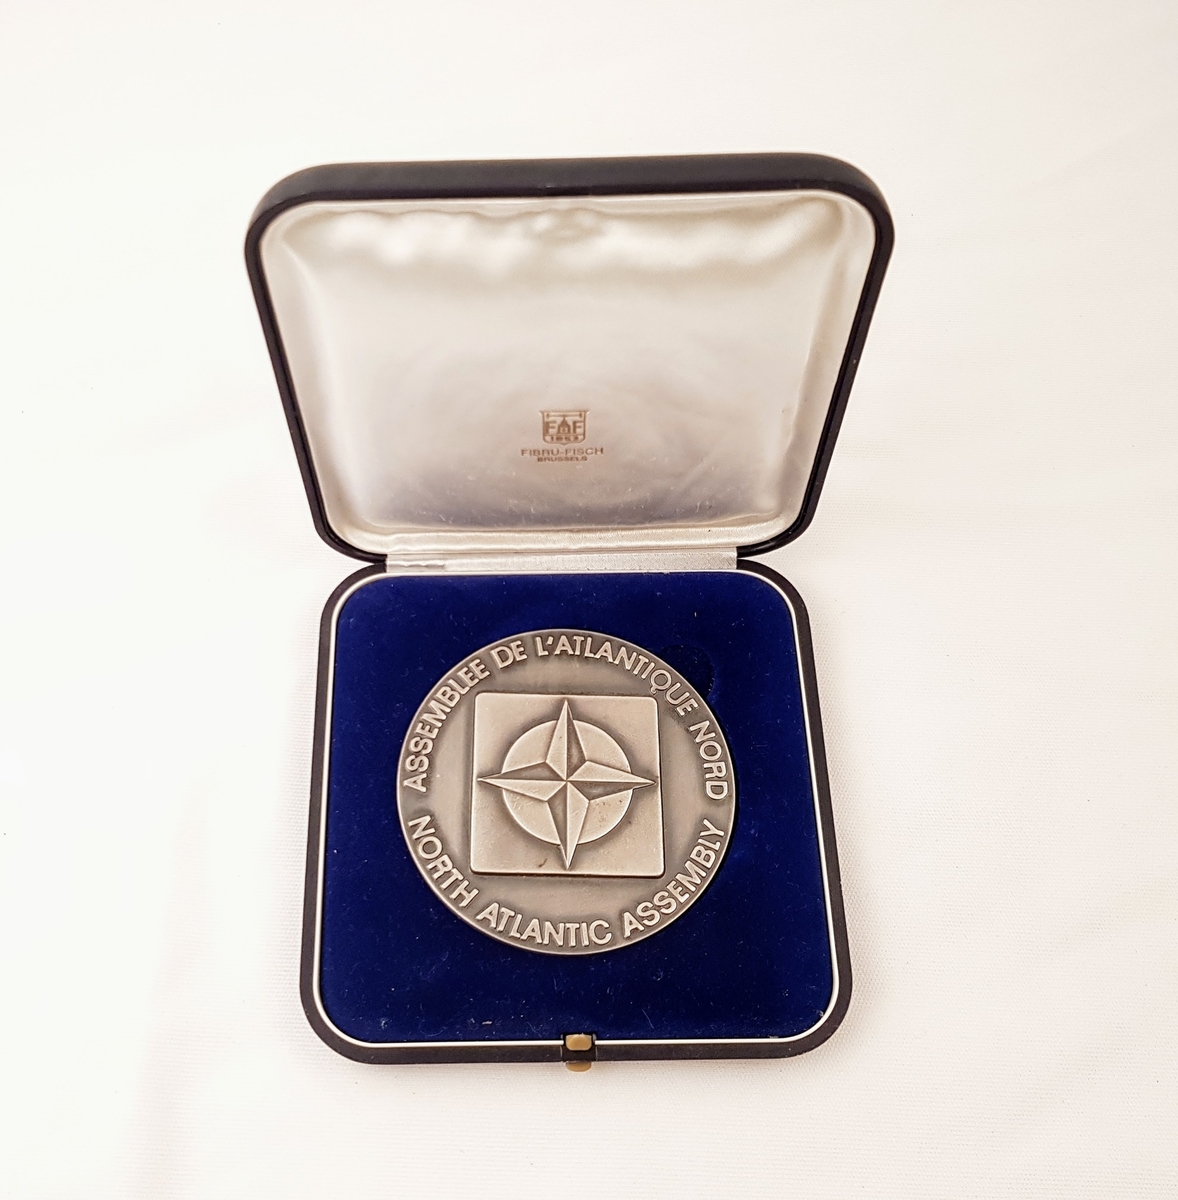 Natos stjerne preger medaljens forside